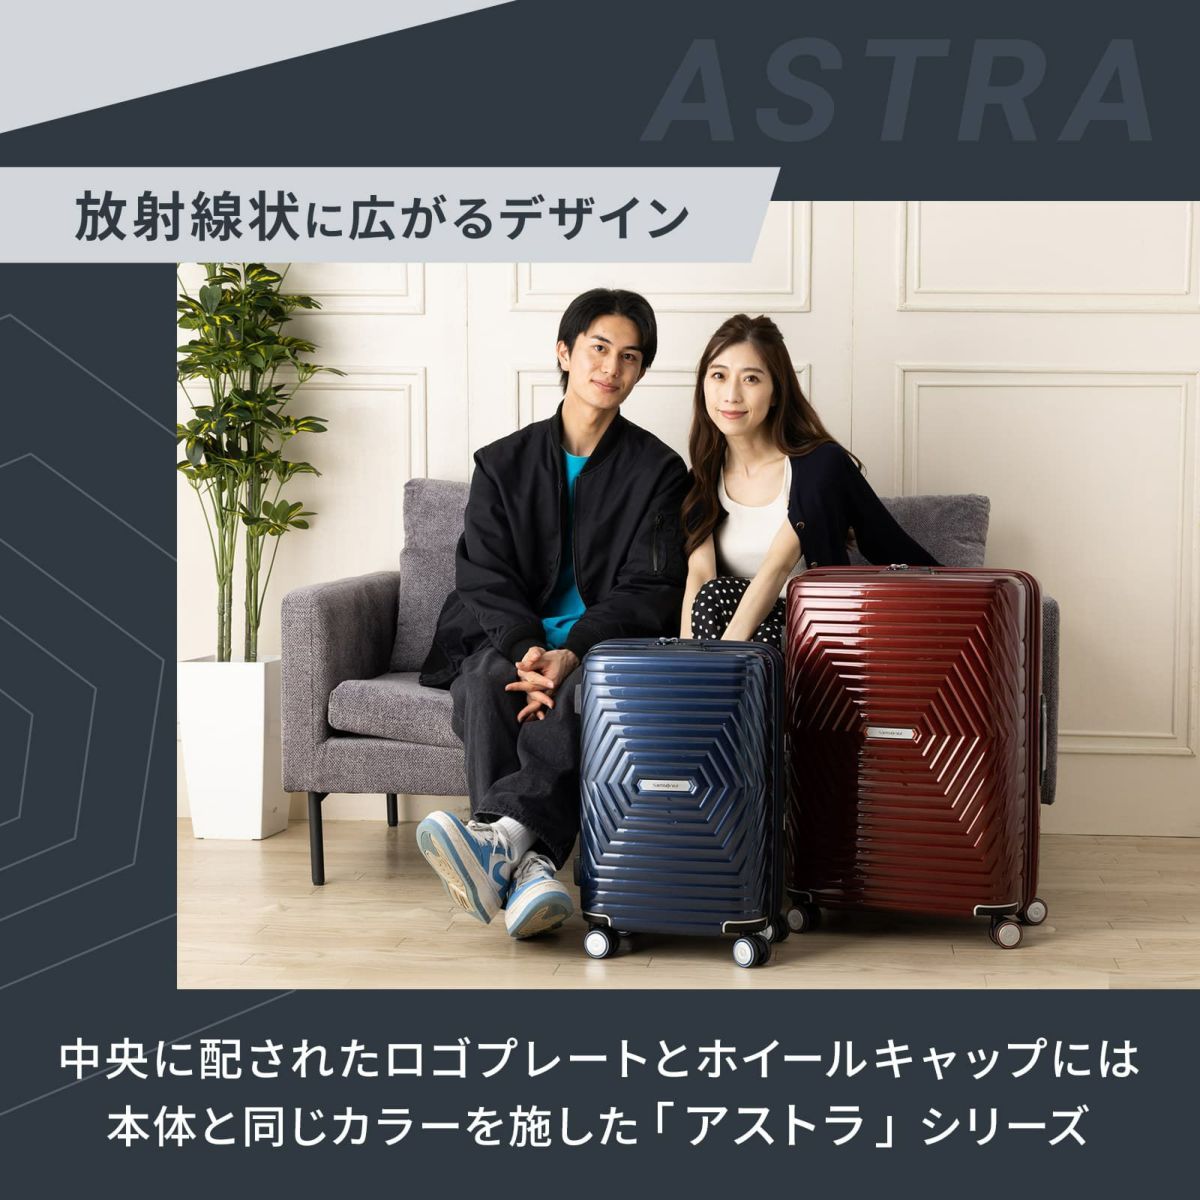 正規品 サムソナイト Samsonite スーツケース キャリーバッグ アストラ ASTRA スピナー68 超軽量 ハードケース 容量拡張  158cm以内 Mサイズ 75L 7泊以上 旅行 おすすめ シンプル おしゃれ